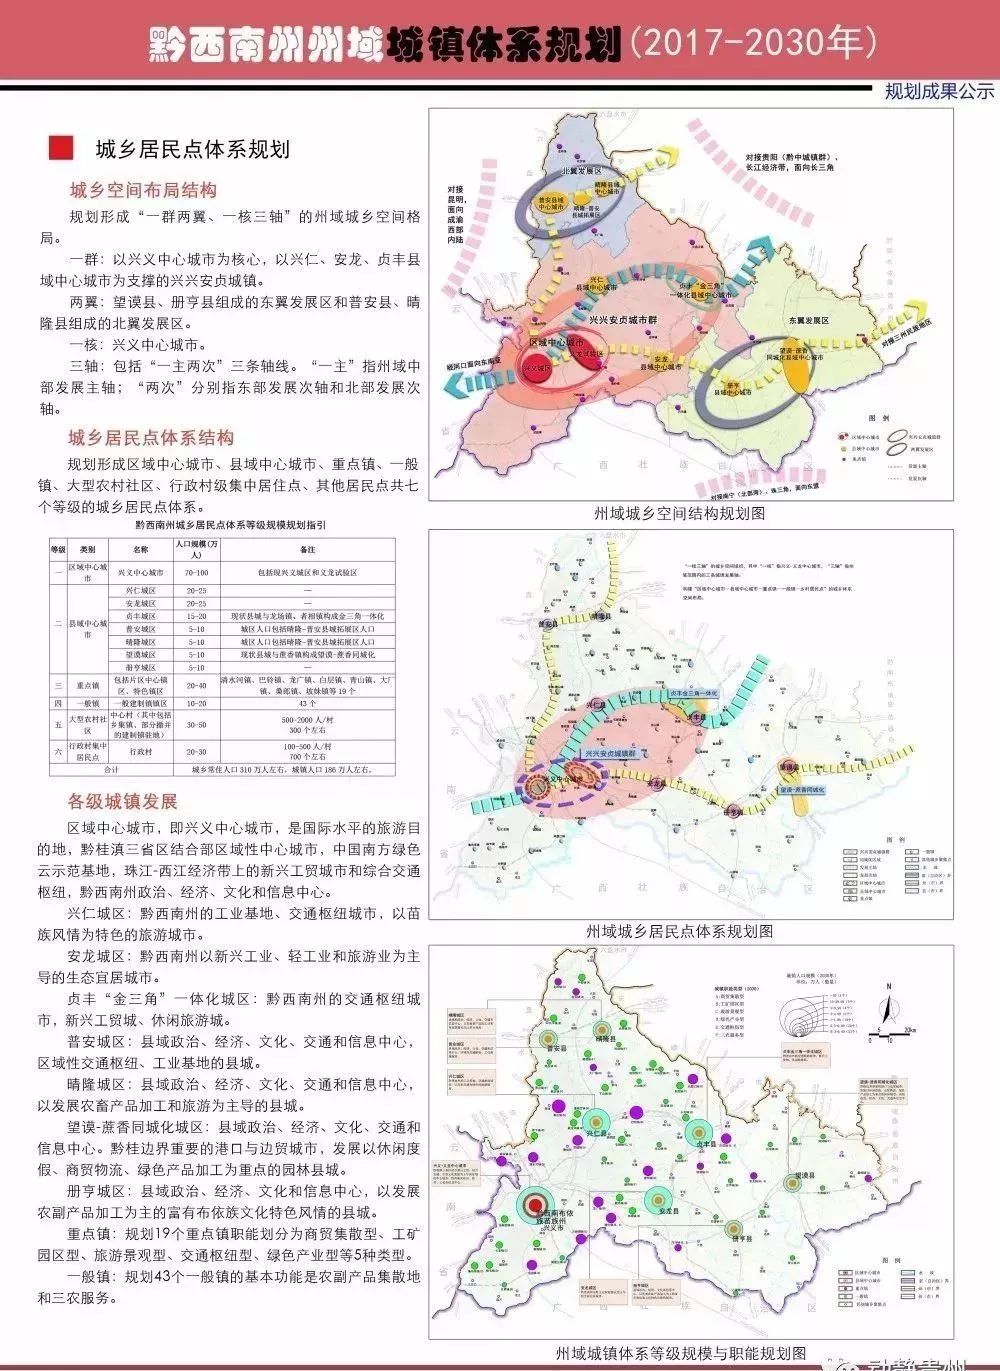 规划正公示到2030年贵州这个地方要建成2高铁1快铁4普铁还有